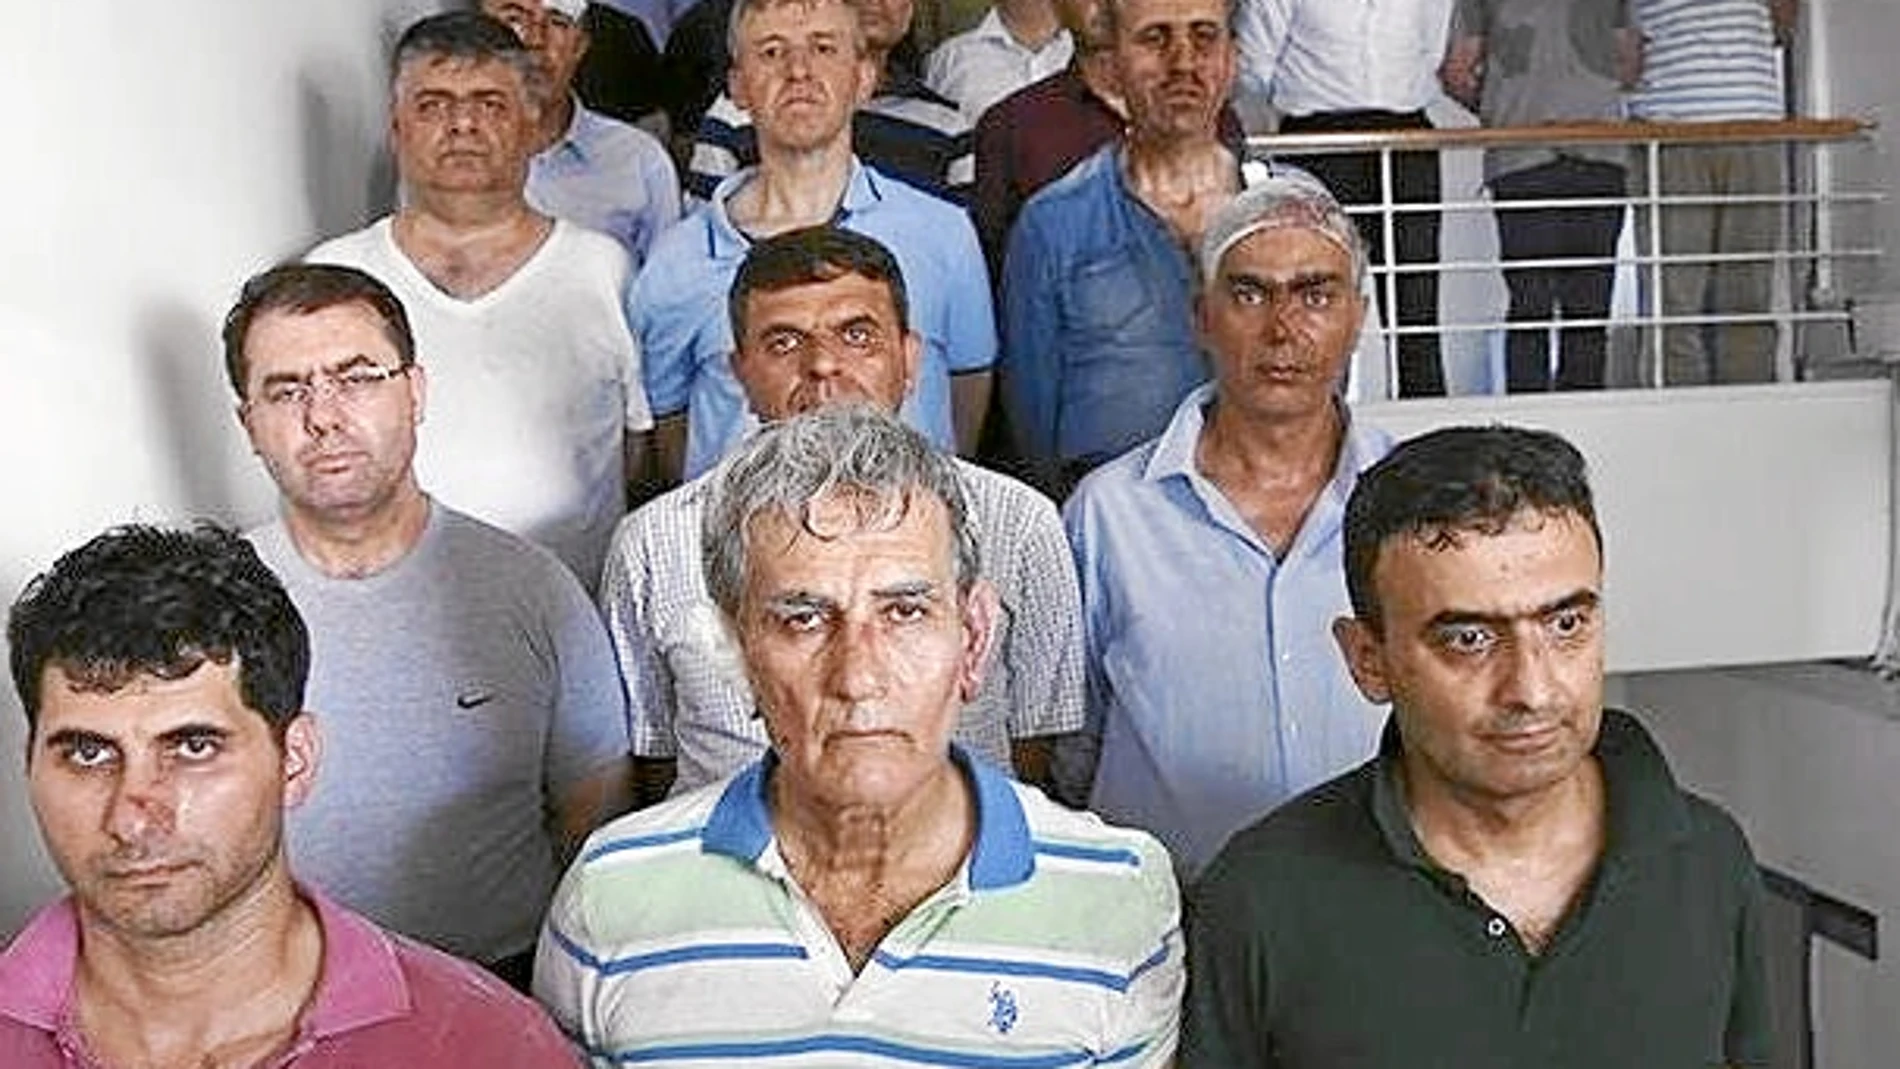 En el centro, el supuesto cabecilla del golpe, Akin Öztürk, junto a otros mandos militares que participaron en el golpe del pasado viernes en Turquía